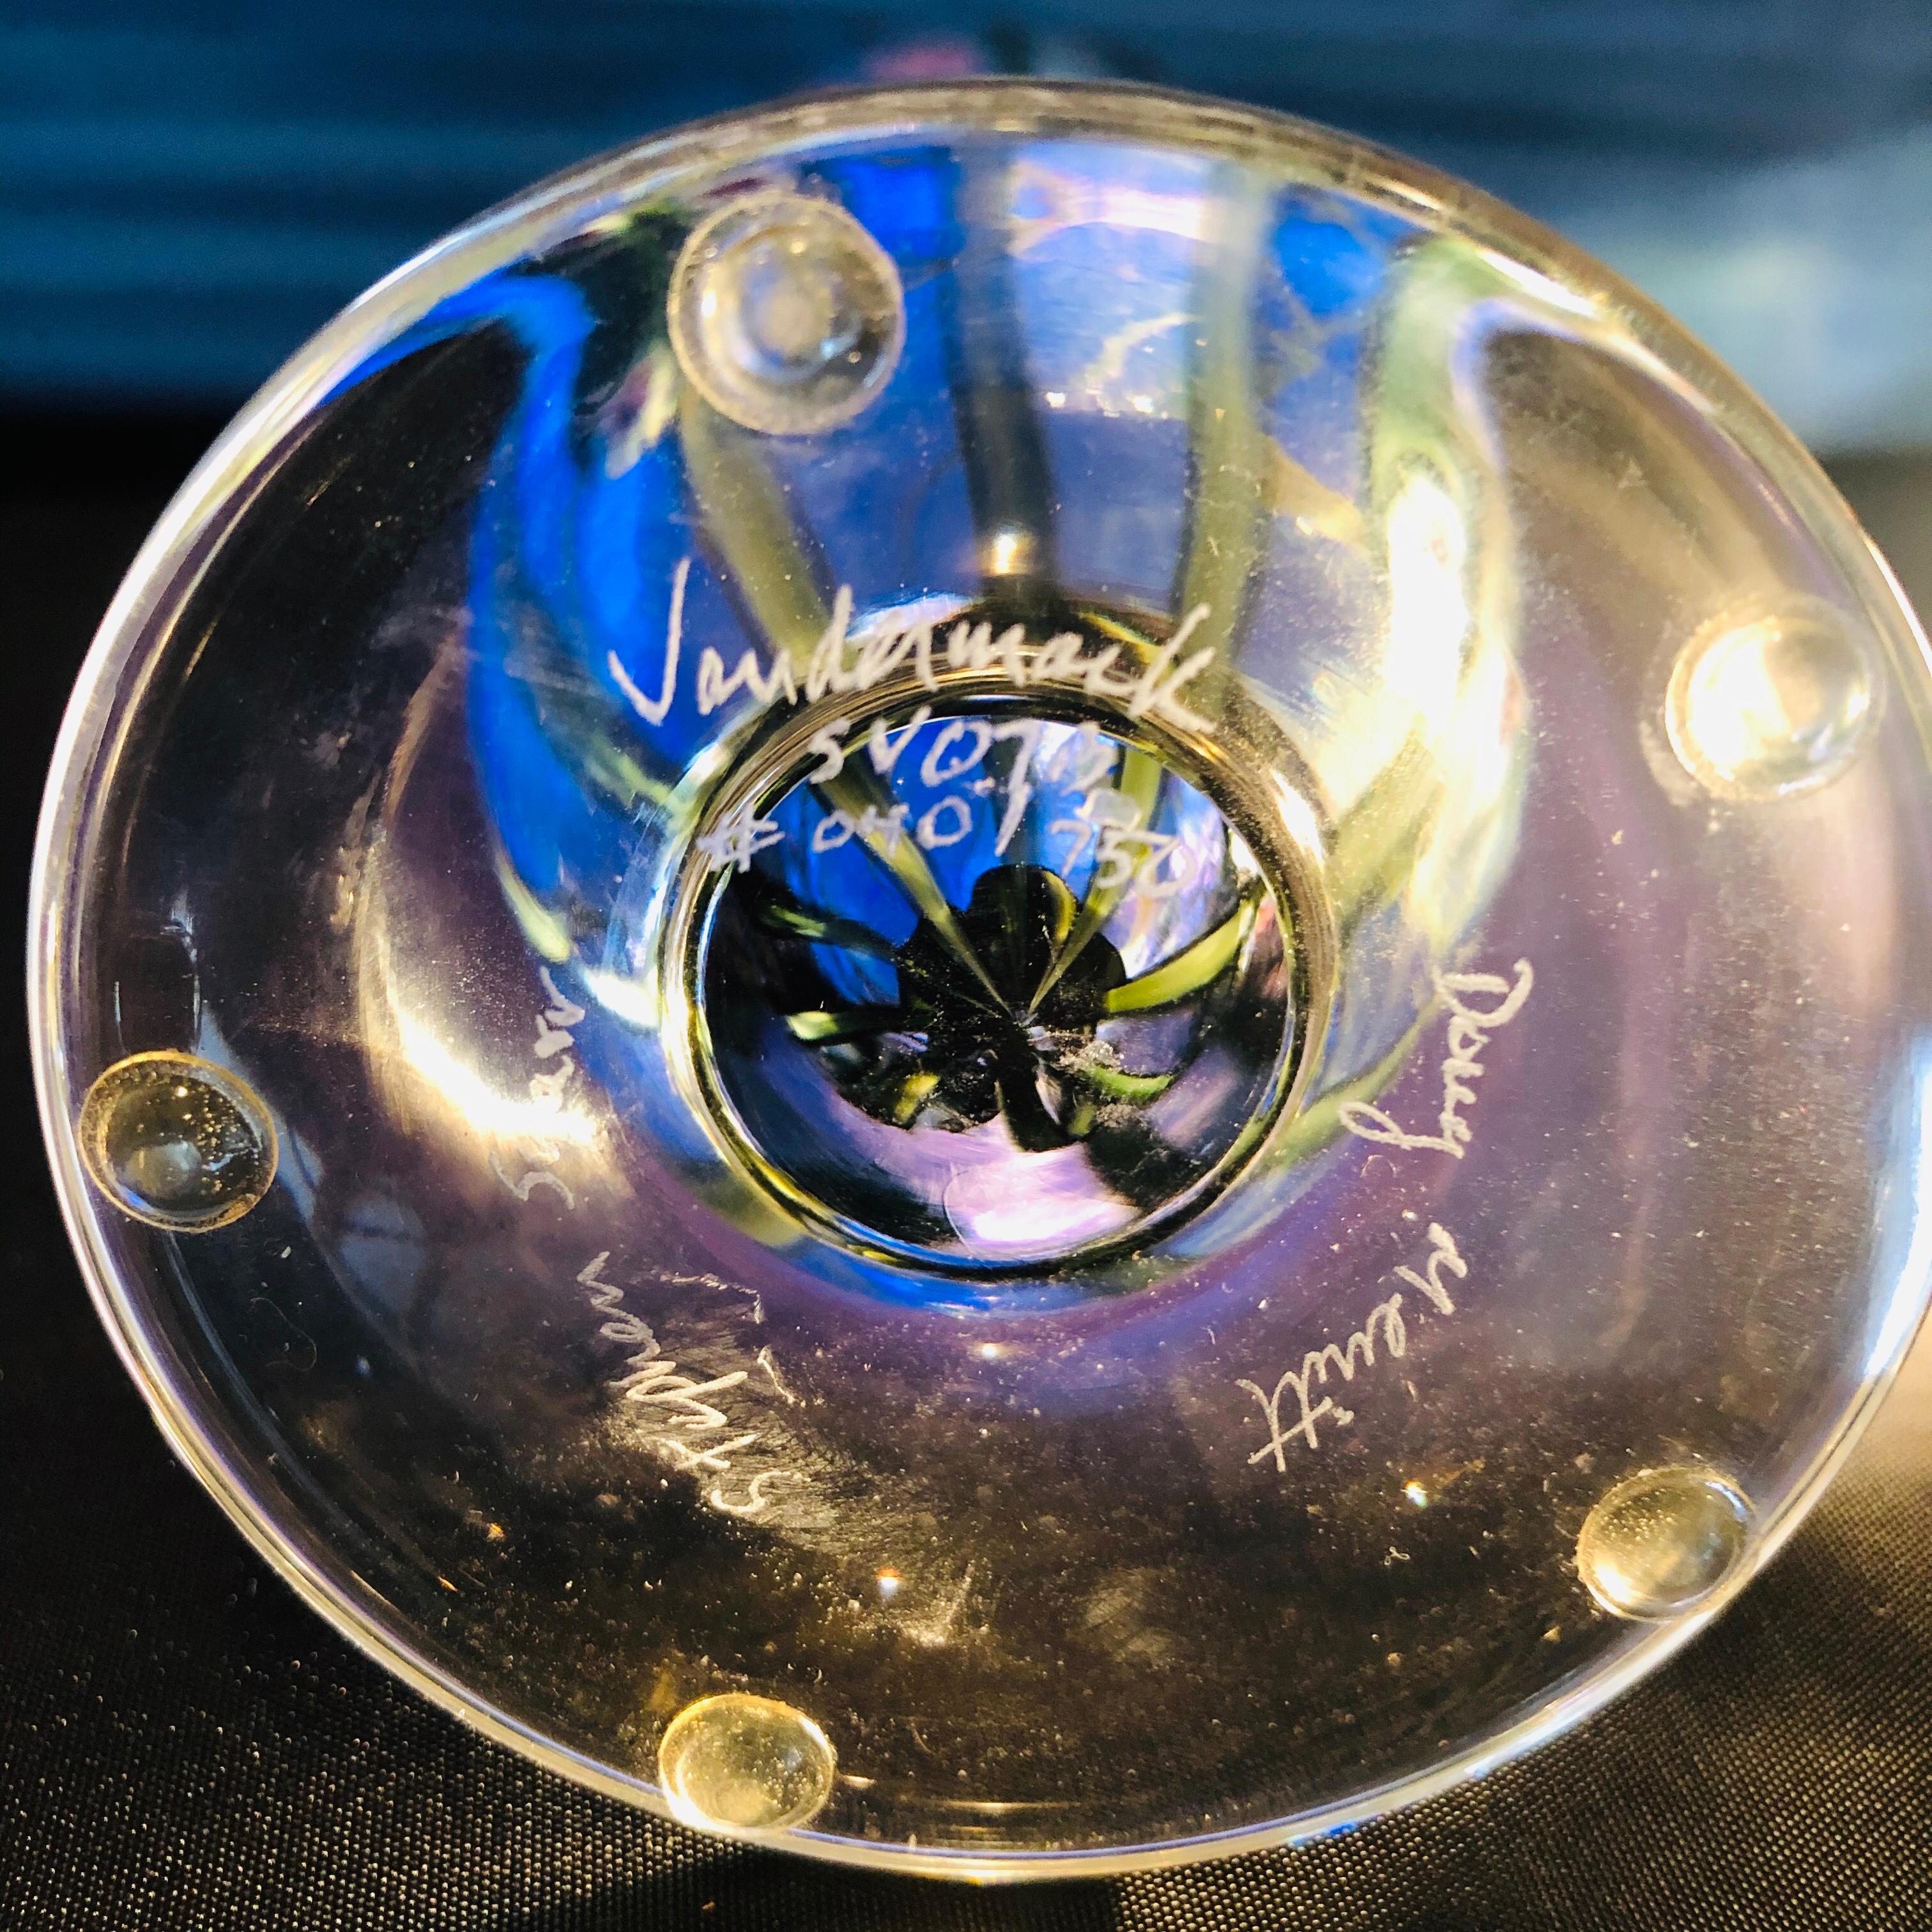 Late 20th Century Vandermark Art Glass Vase Signed by Vandermark, Doug Merritt and Stephen Smarr